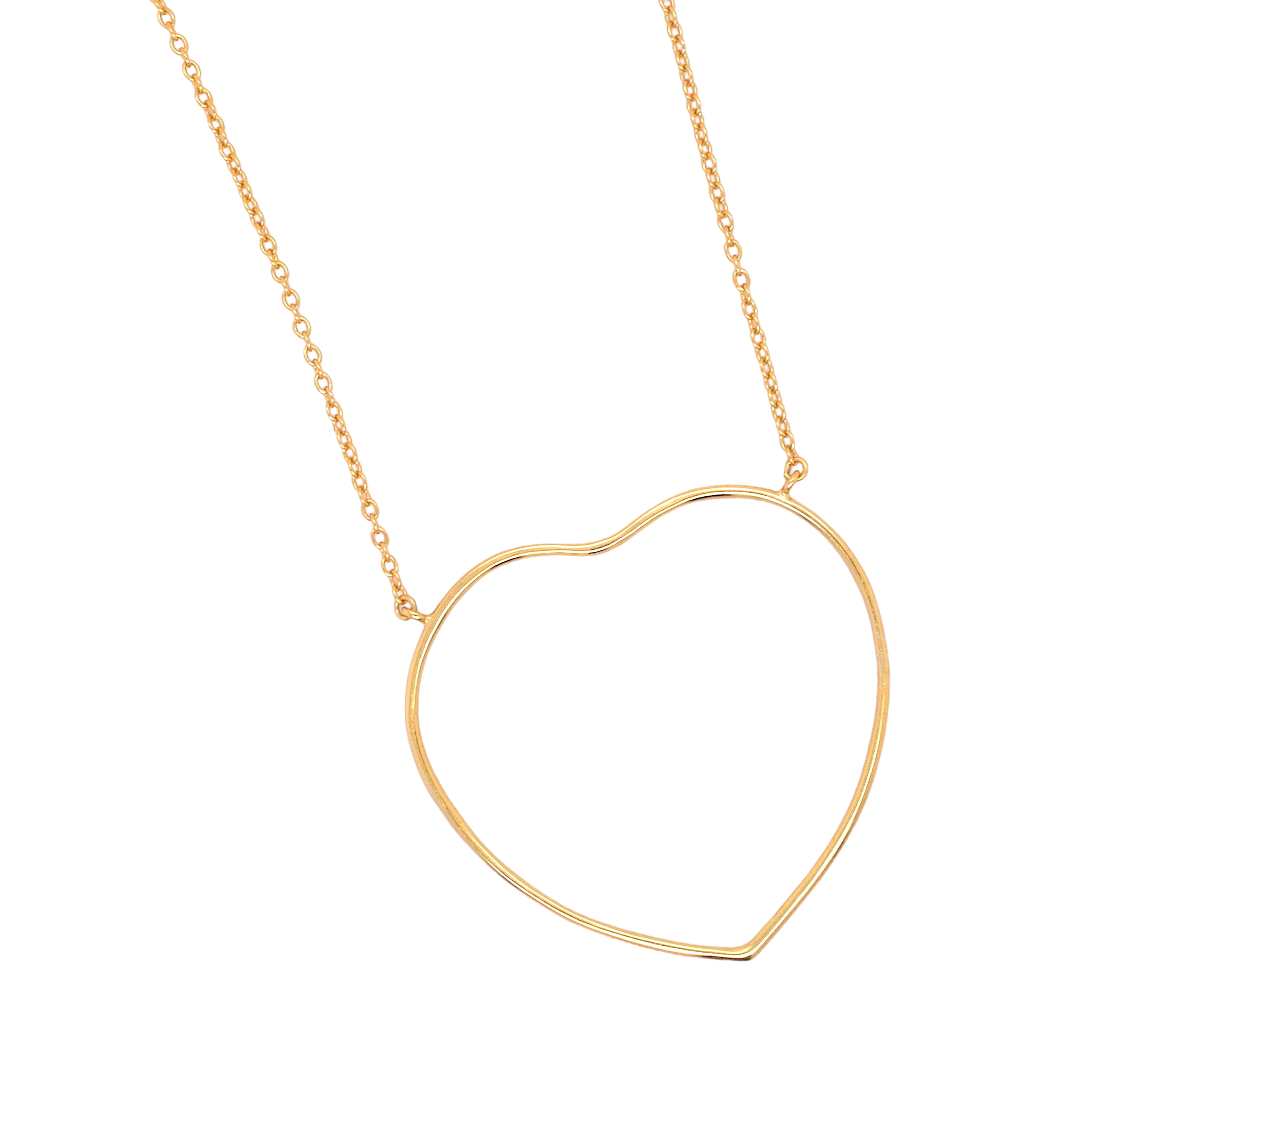 Jumbo Love Heart Necklace